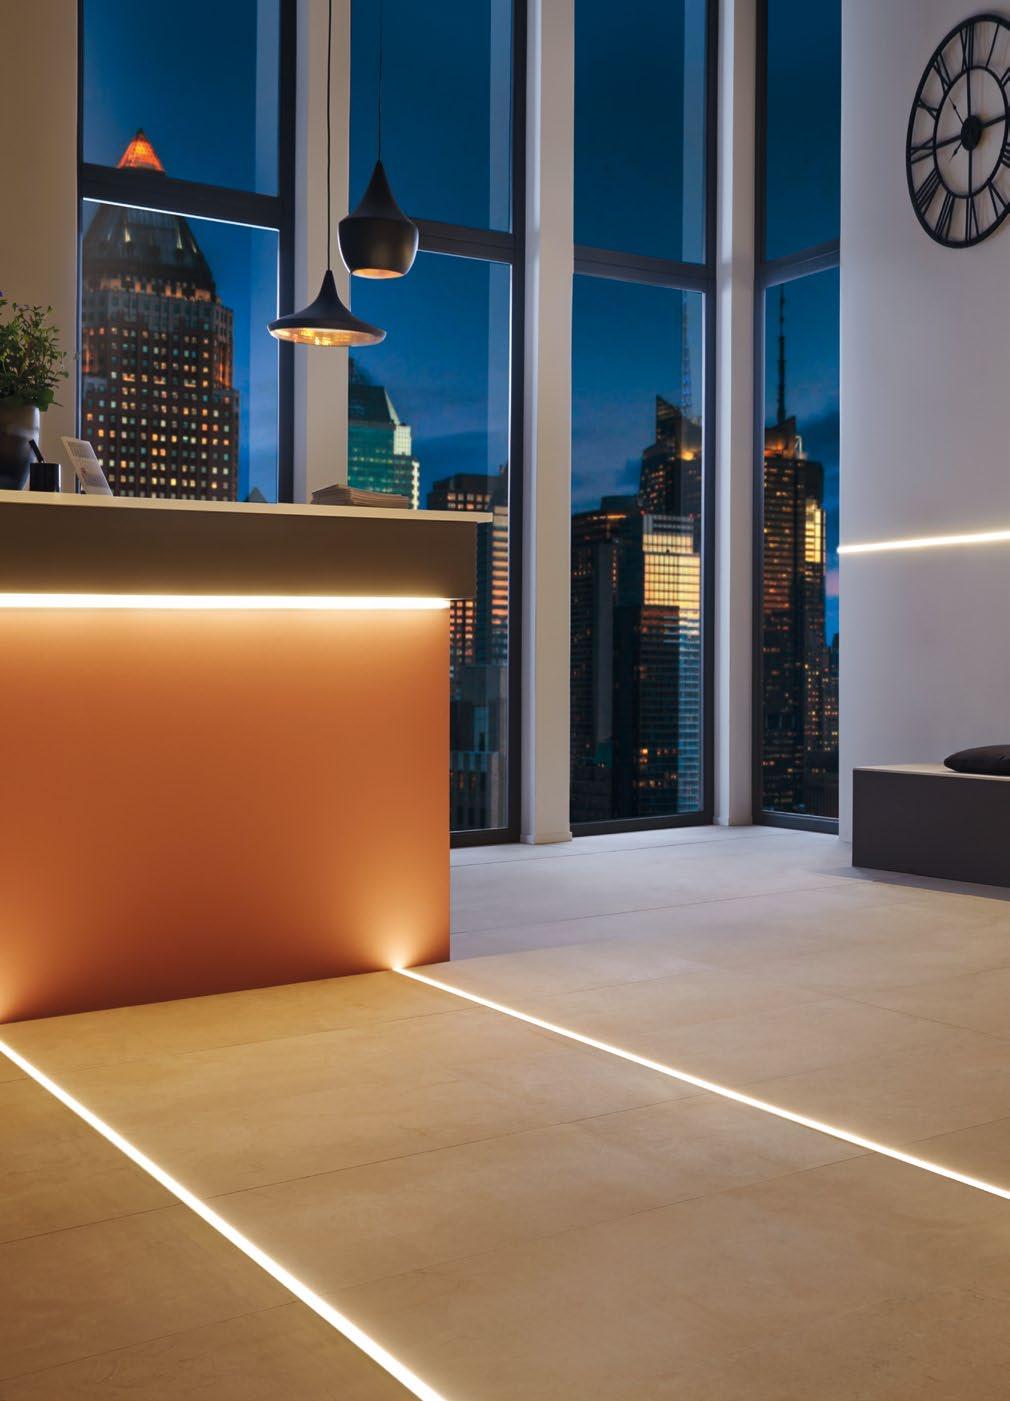 DURLIS-LED Floor Beleuchtete Listelli-Profile für eine dekorative mbiete- Beleuchtung auf Wand- und